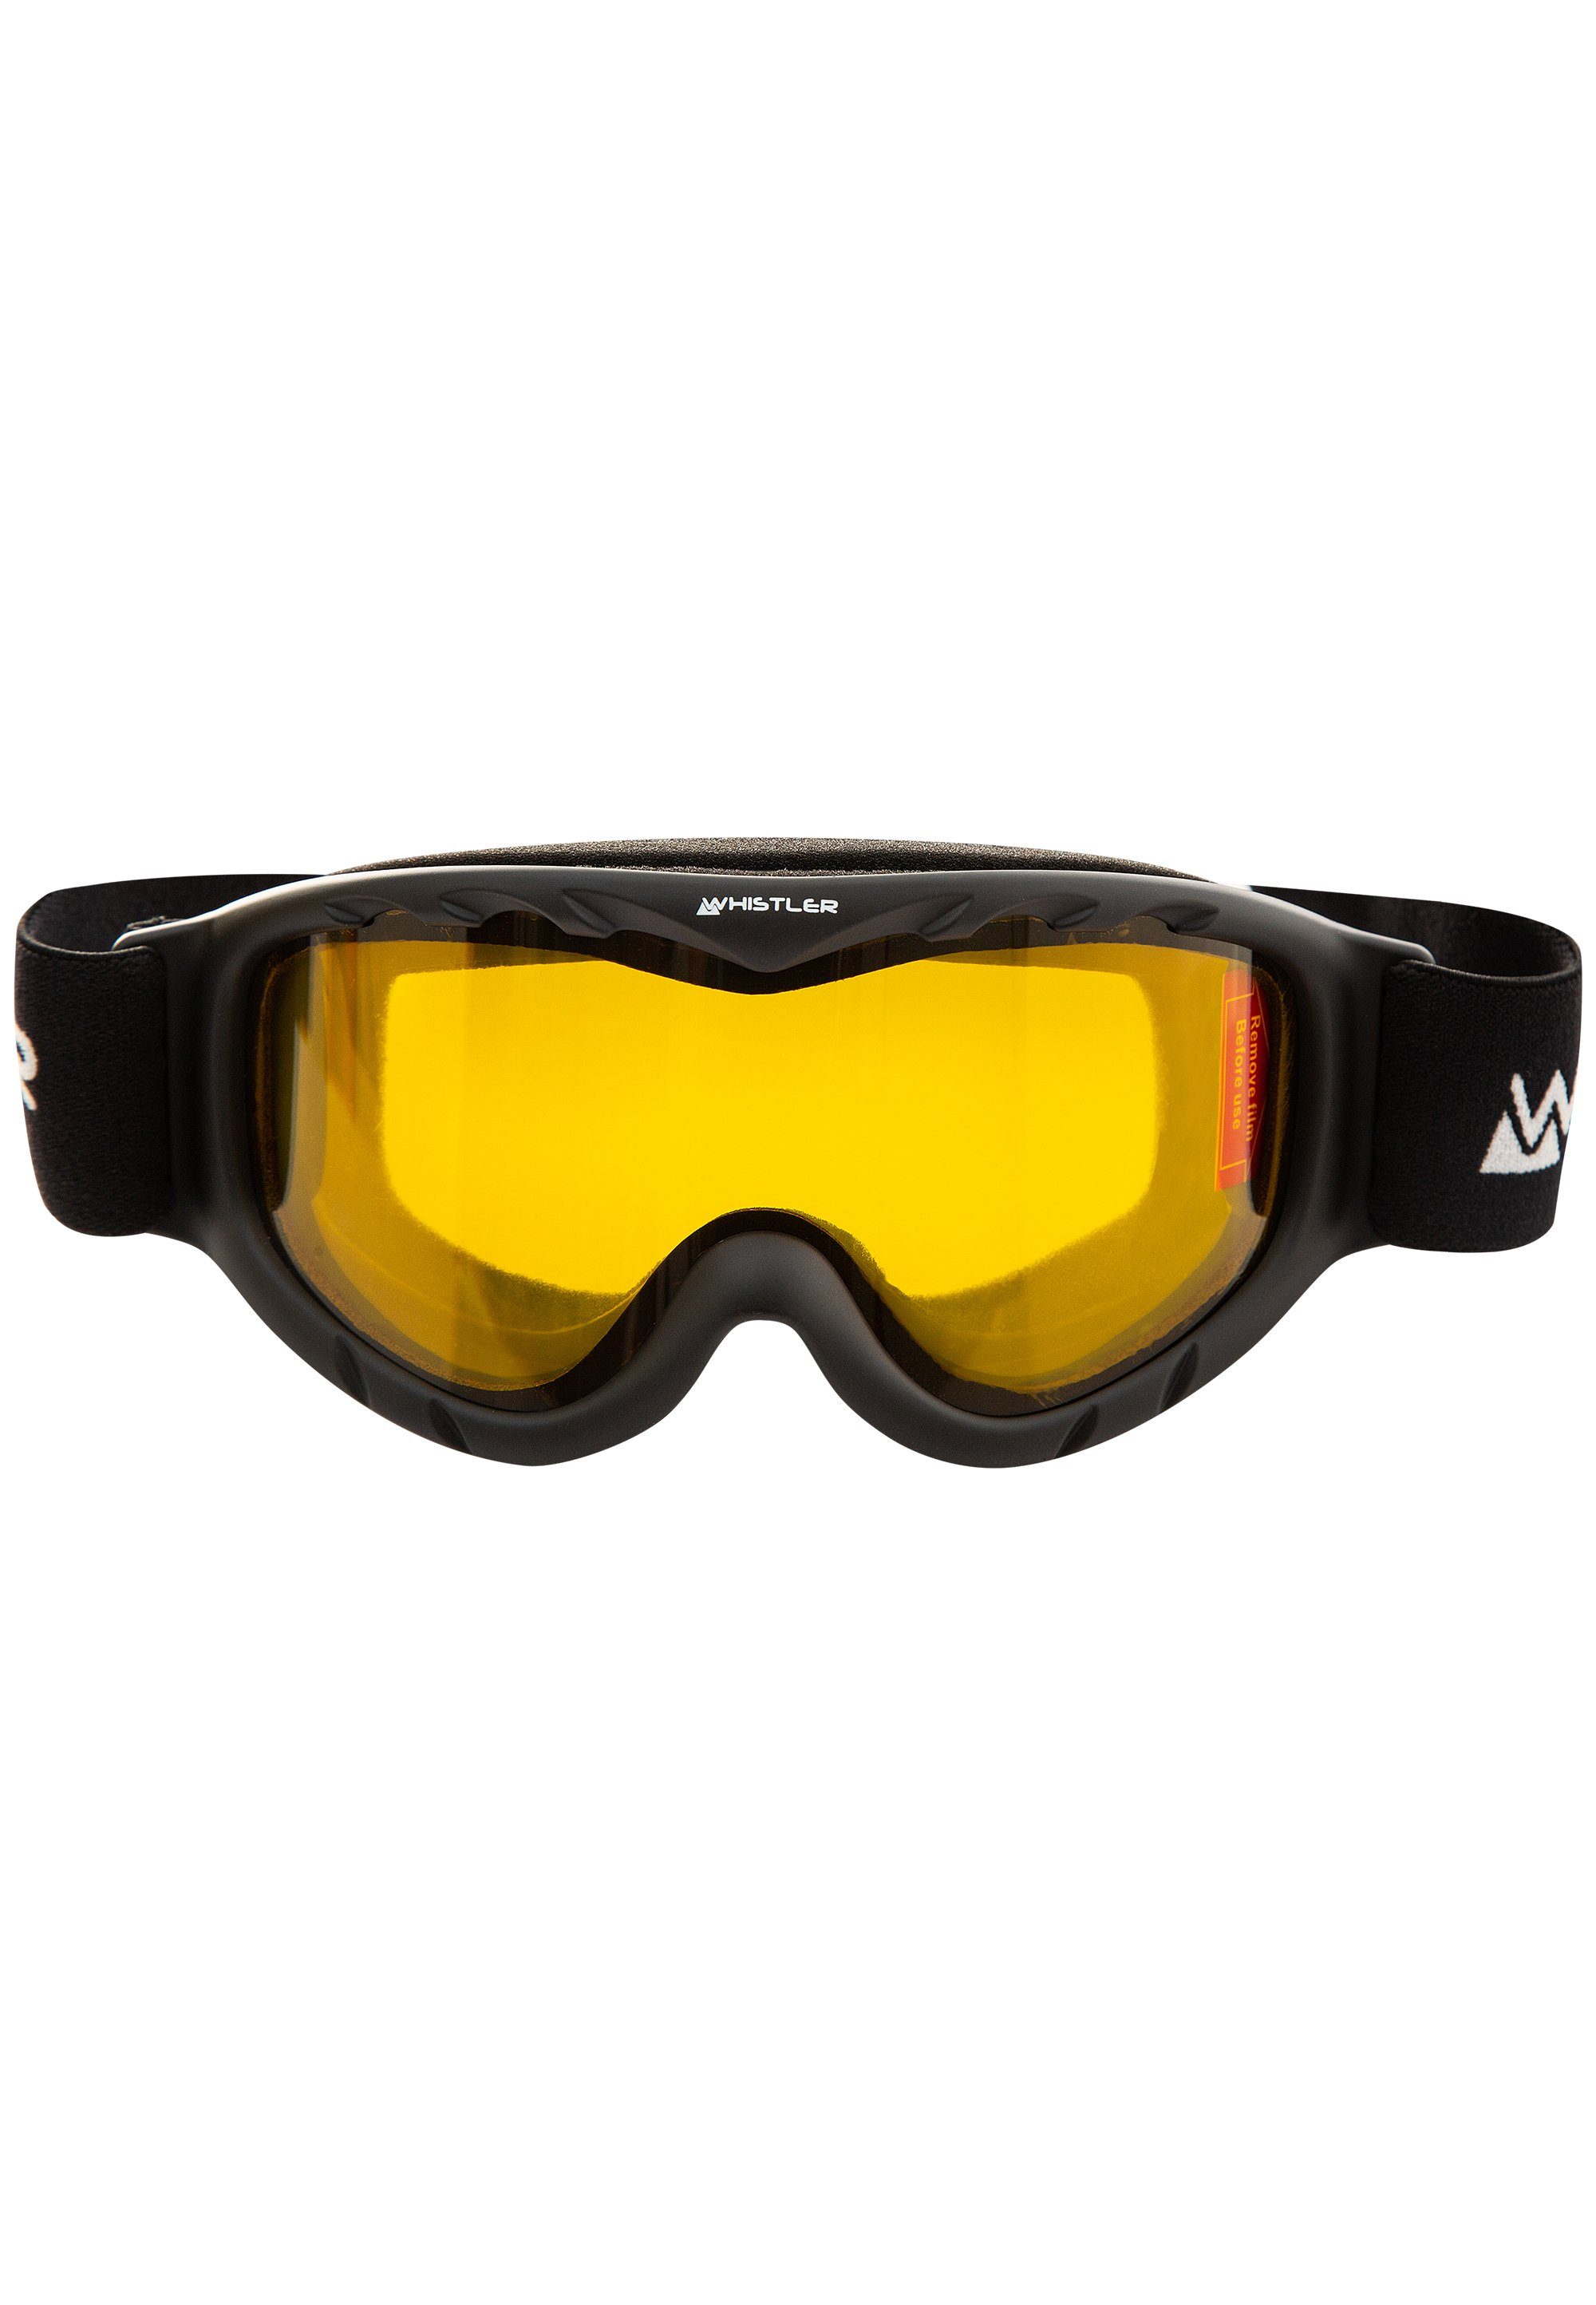 WHISTLER Skibrille WS300 Jr. Ski Goggle, mit schwarz Anti-Fog-Beschichtung